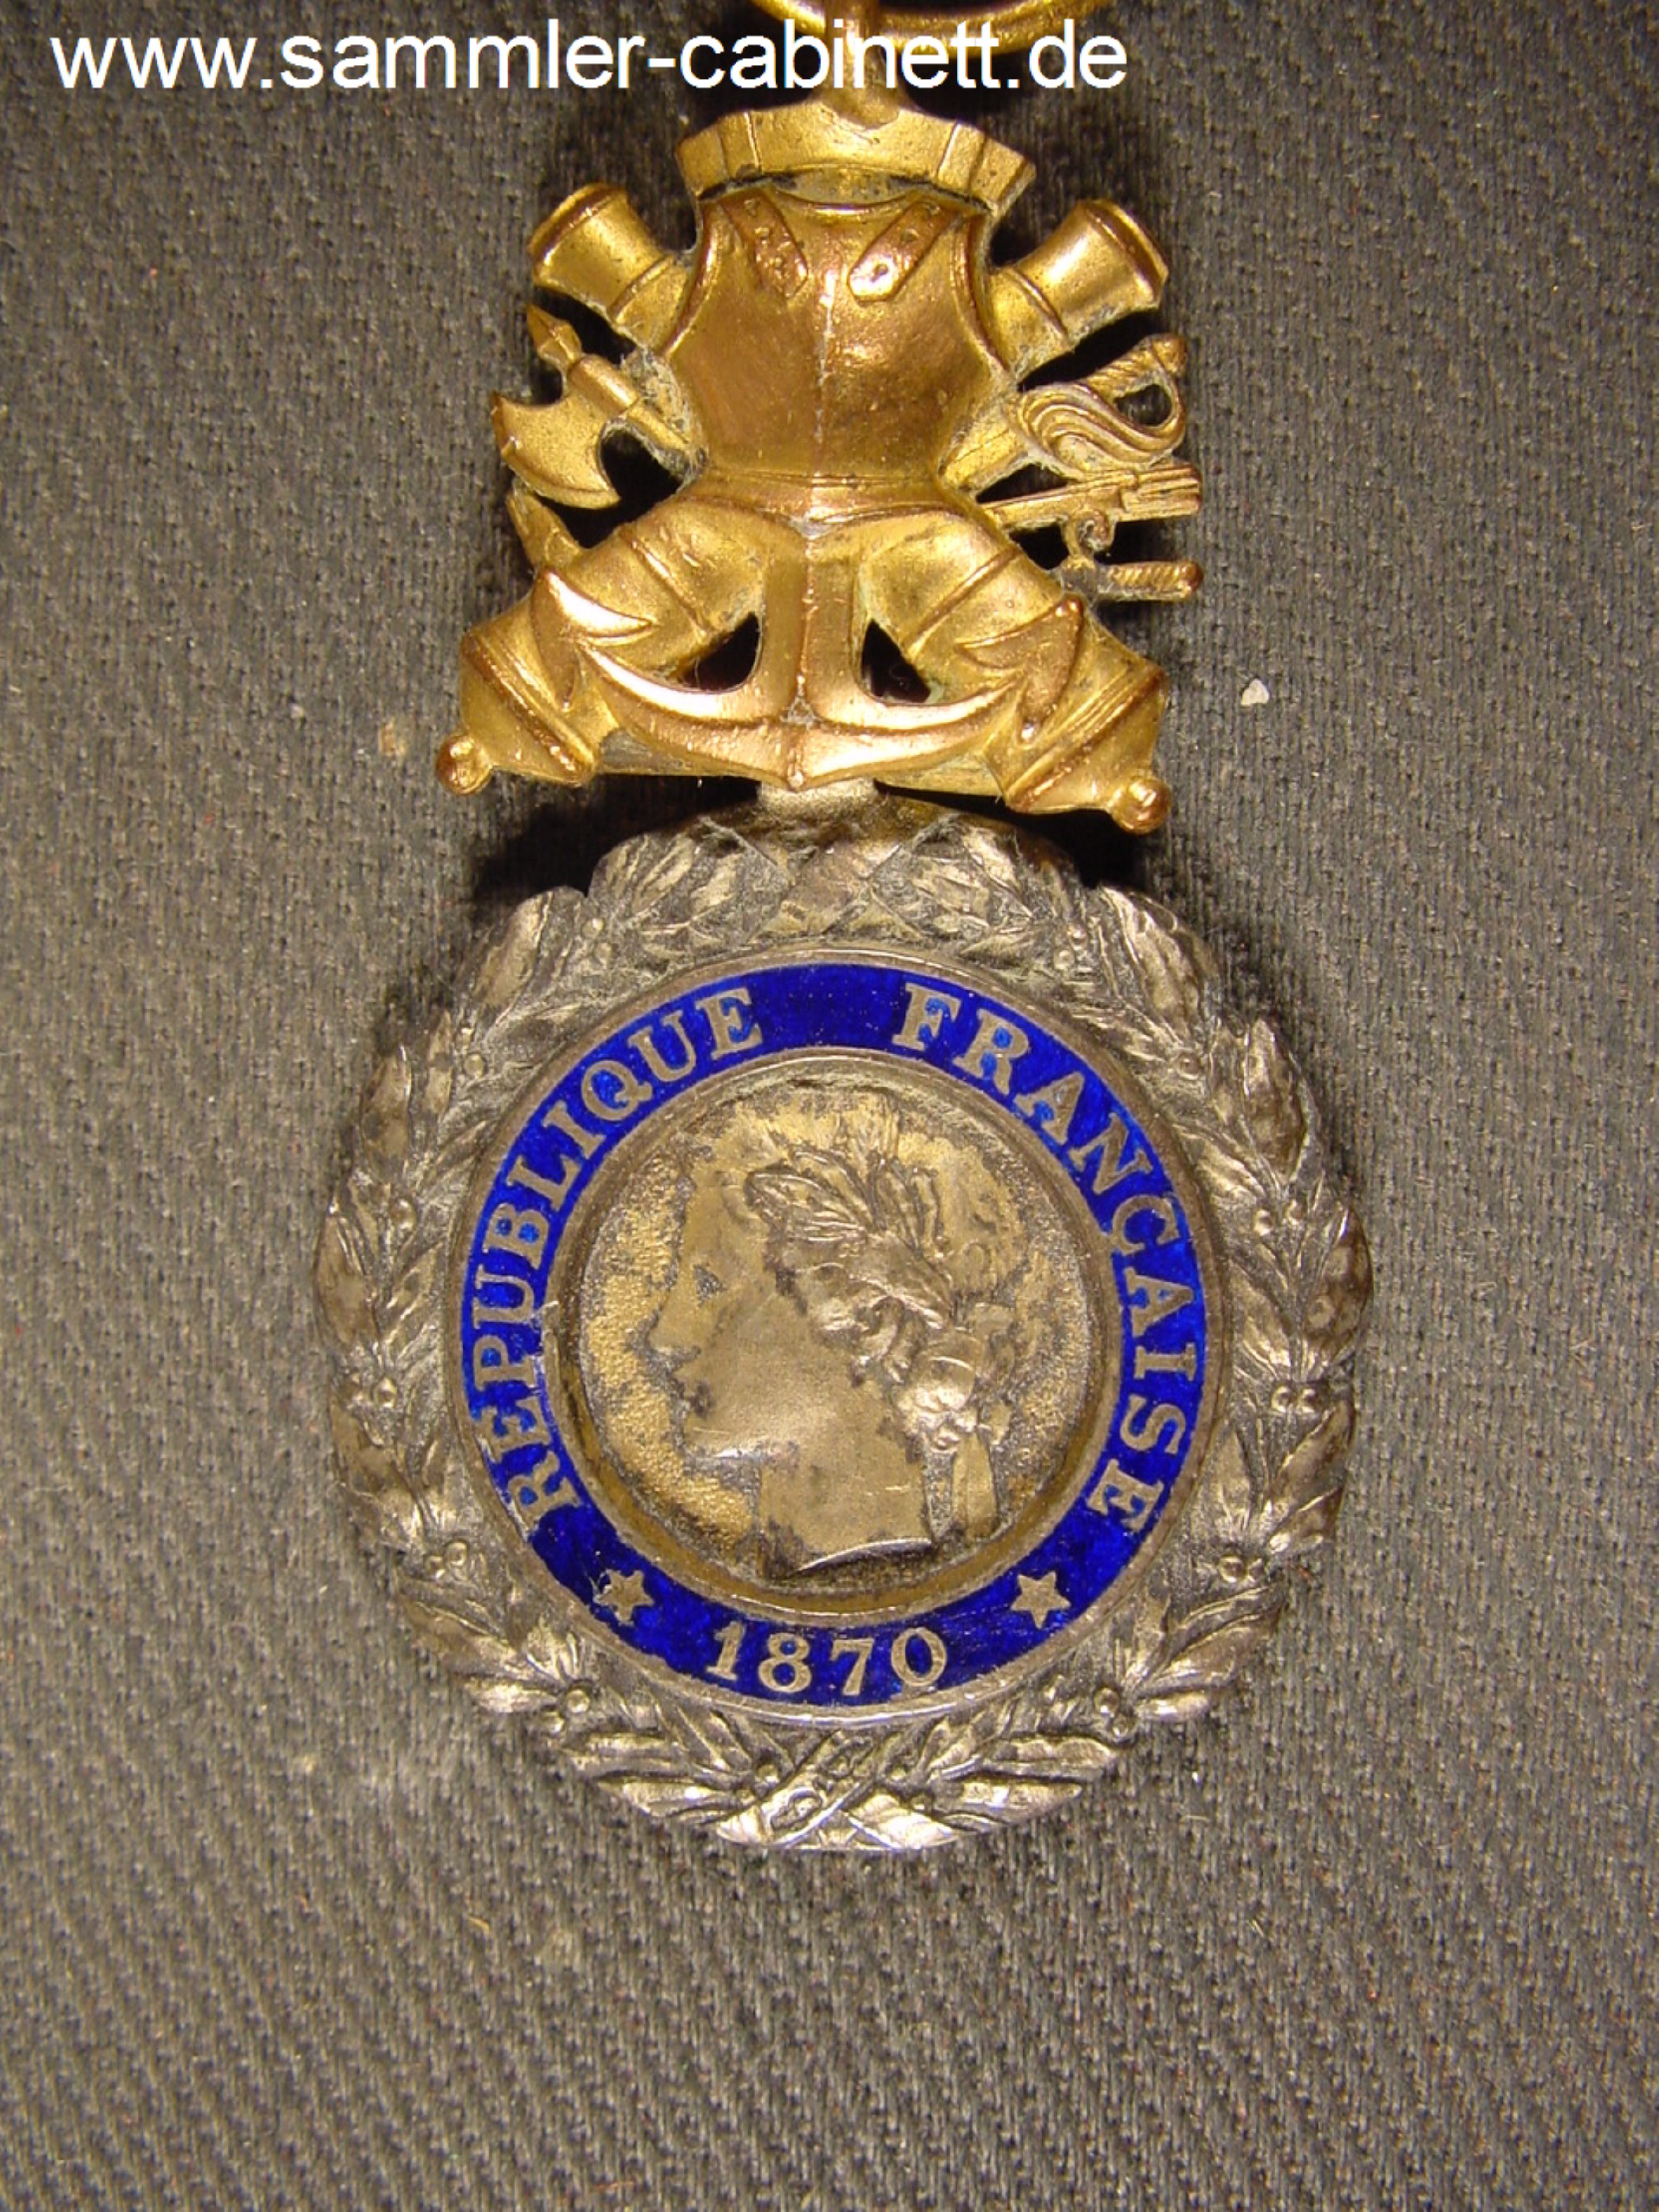 Militär Med. - mit der Jahreszahl - 1870 - Silber -...